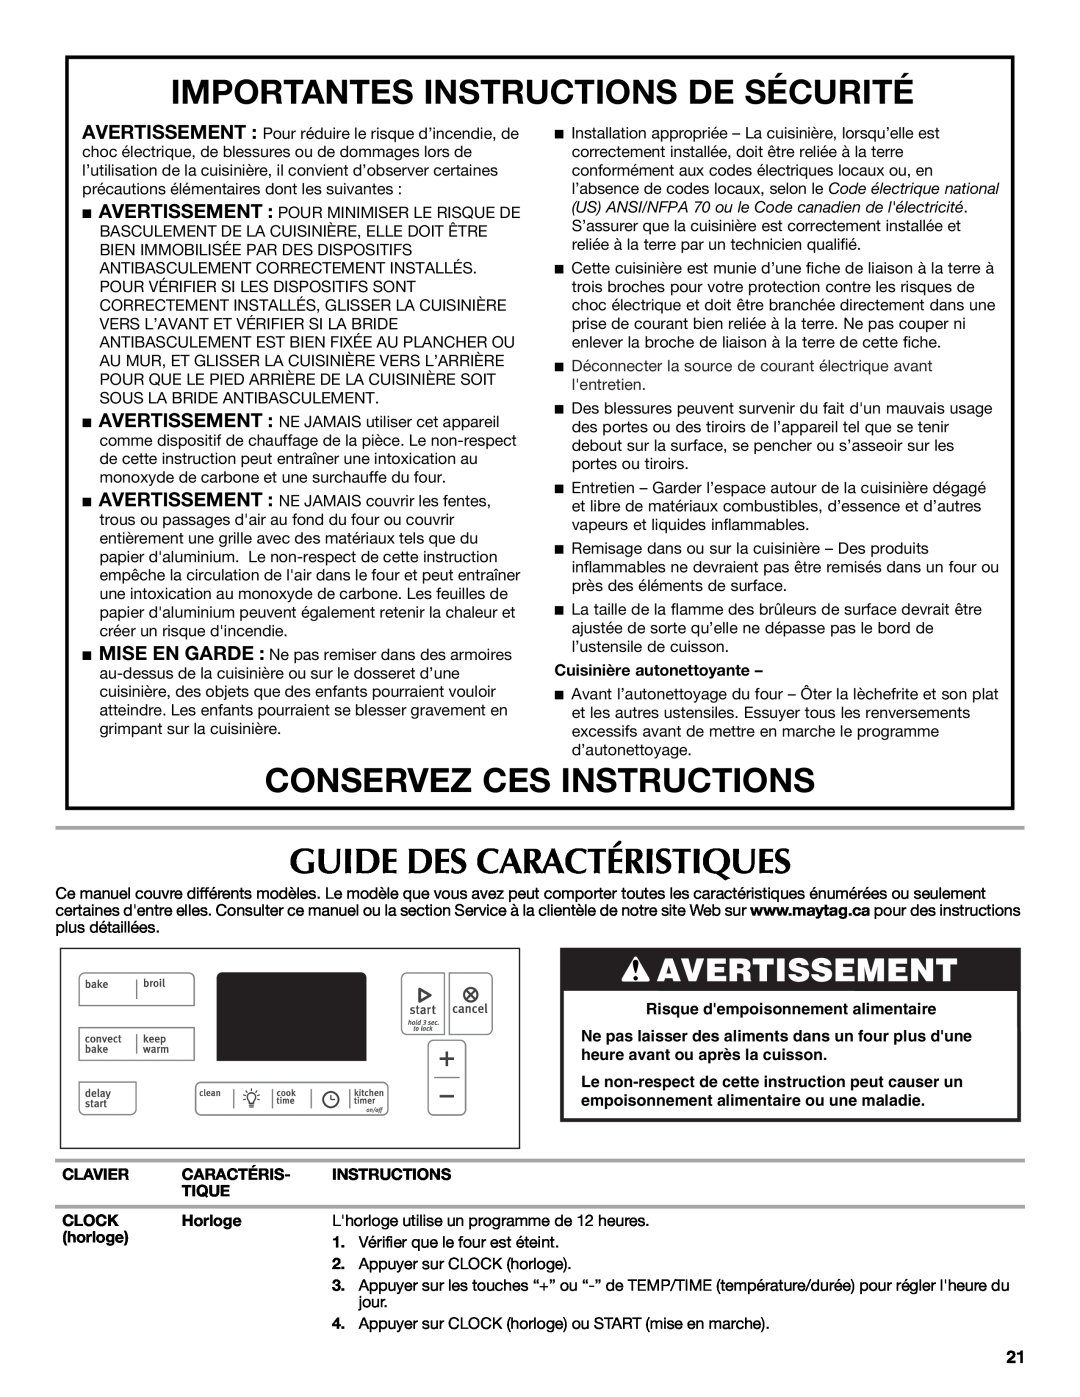 Maytag W10399029B warranty Guide Des Caractéristiques, Importantes Instructions De Sécurité, Conservez Ces Instructions 